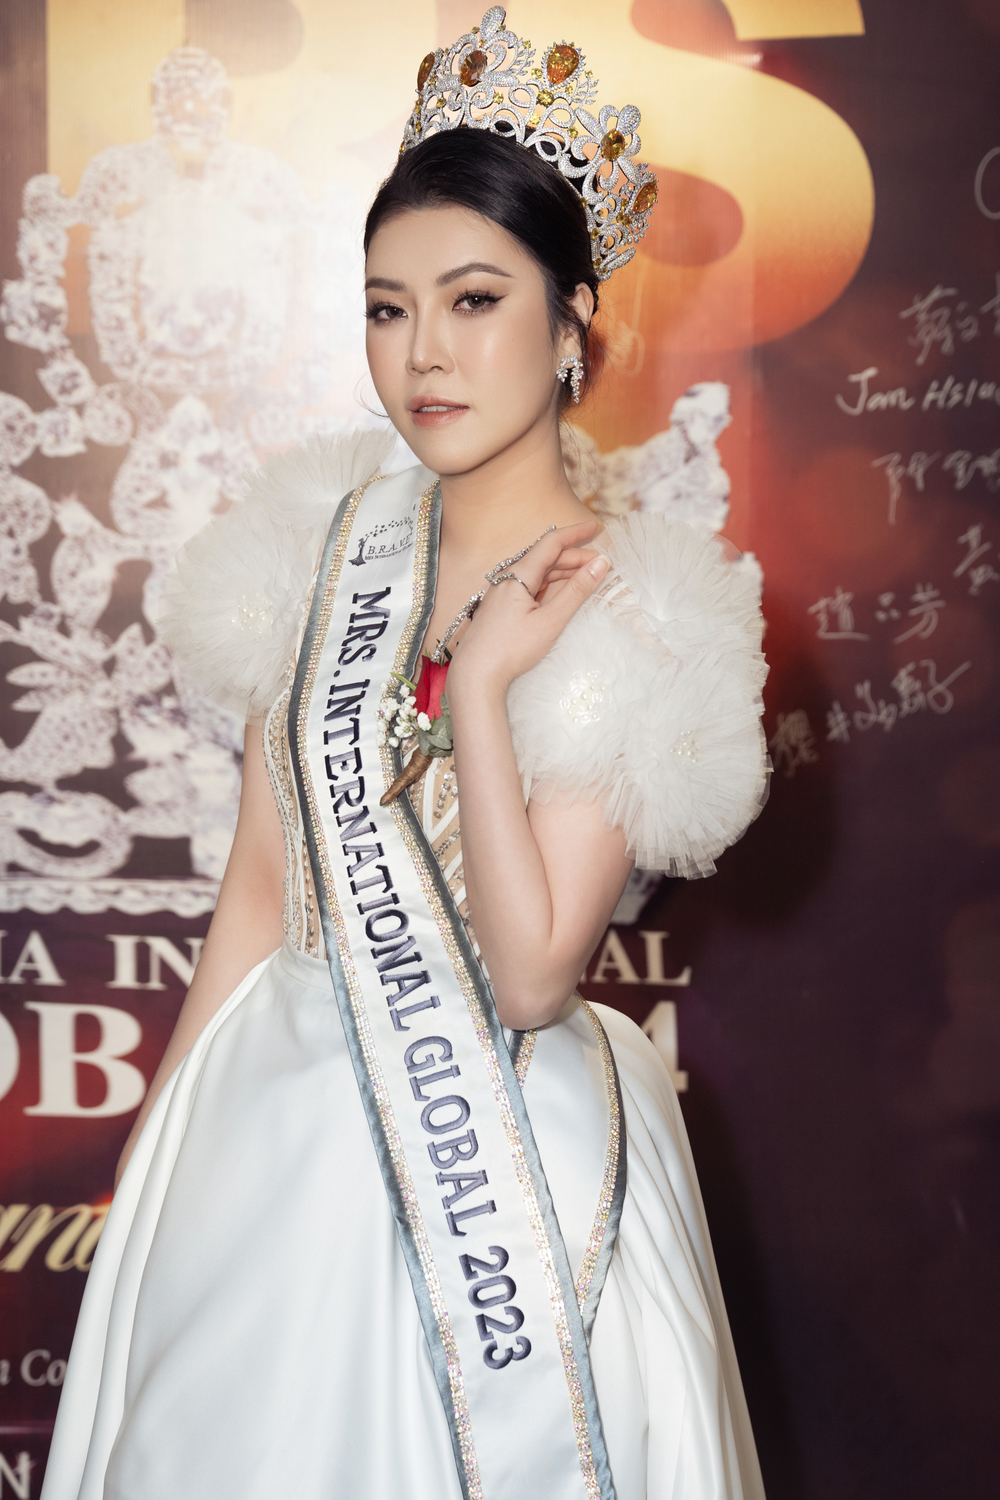 Hoa hậu Trần Hà Trâm Anh, CEO Vũ Thái “xuất khẩu” đầu năm sang Mã Lai để chấm thi - Ảnh 1.